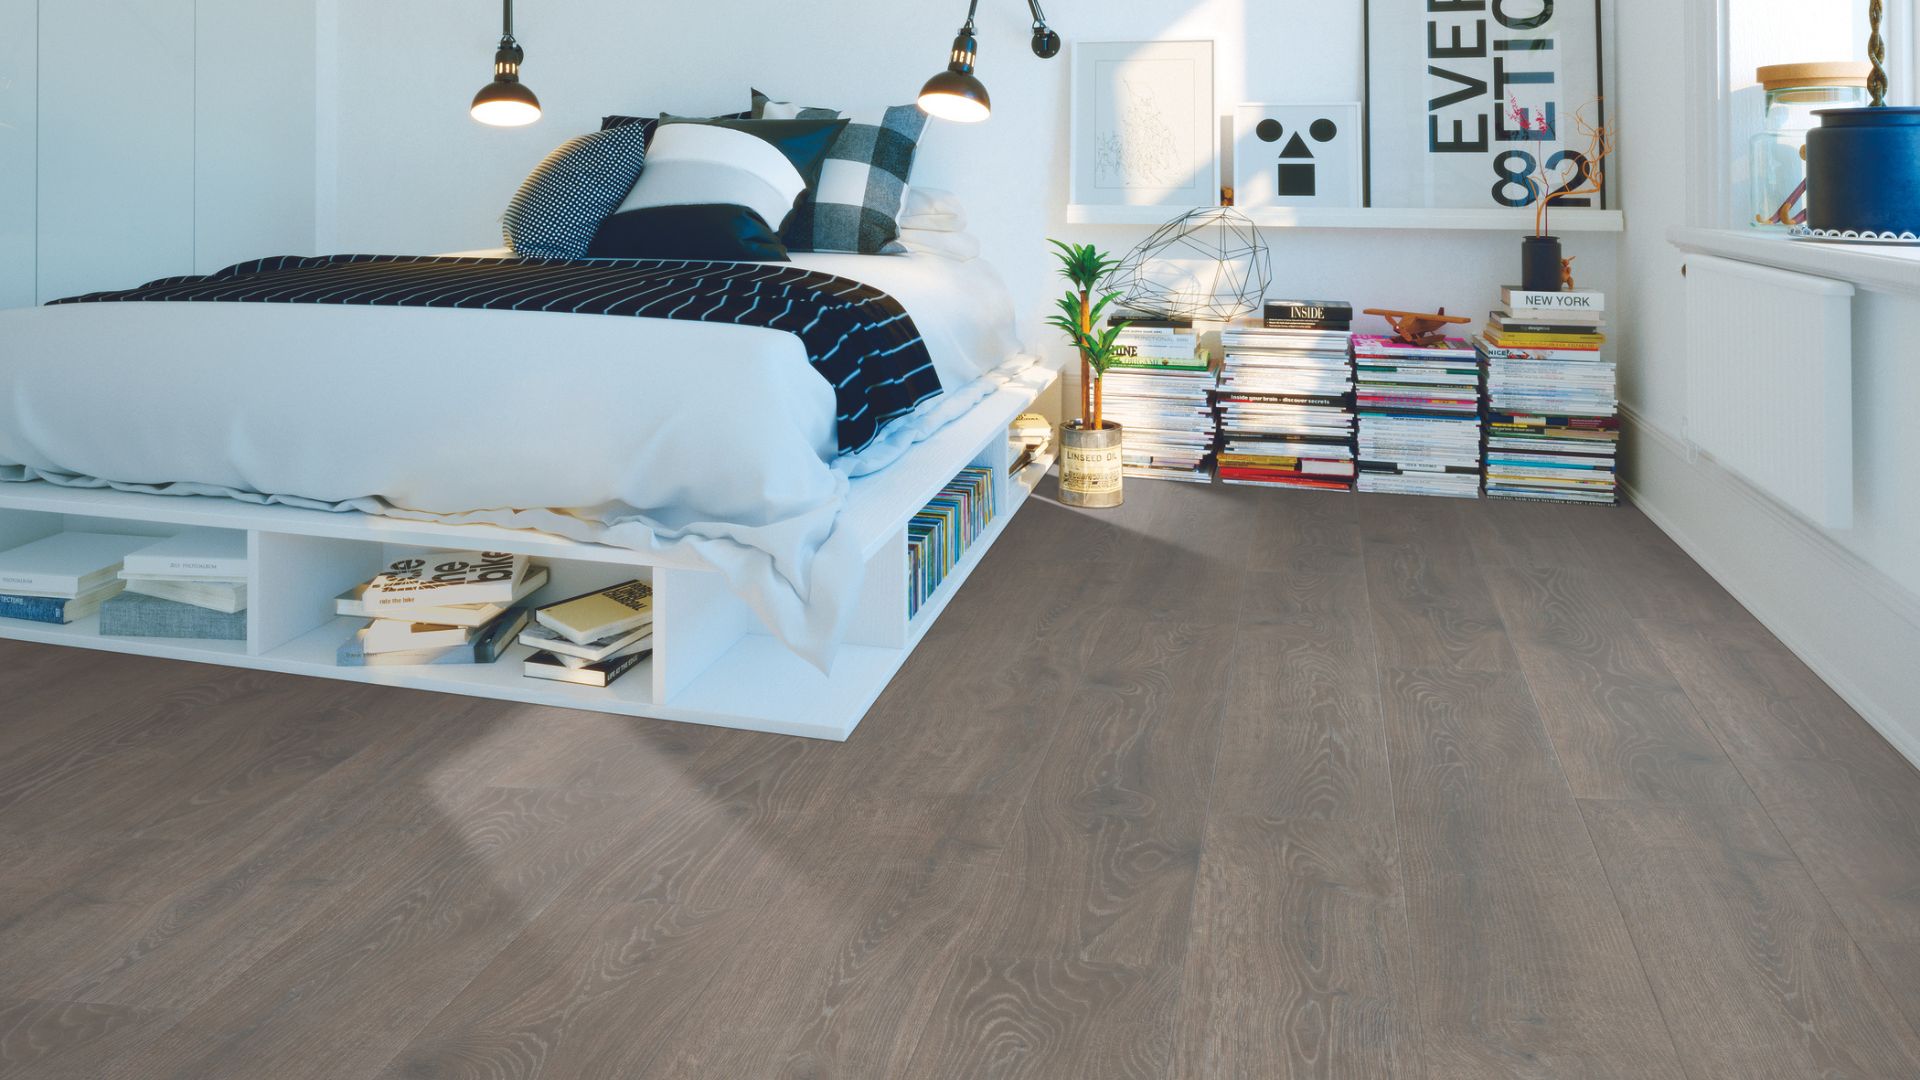 Grey laminate wood flooring in a bedroom.